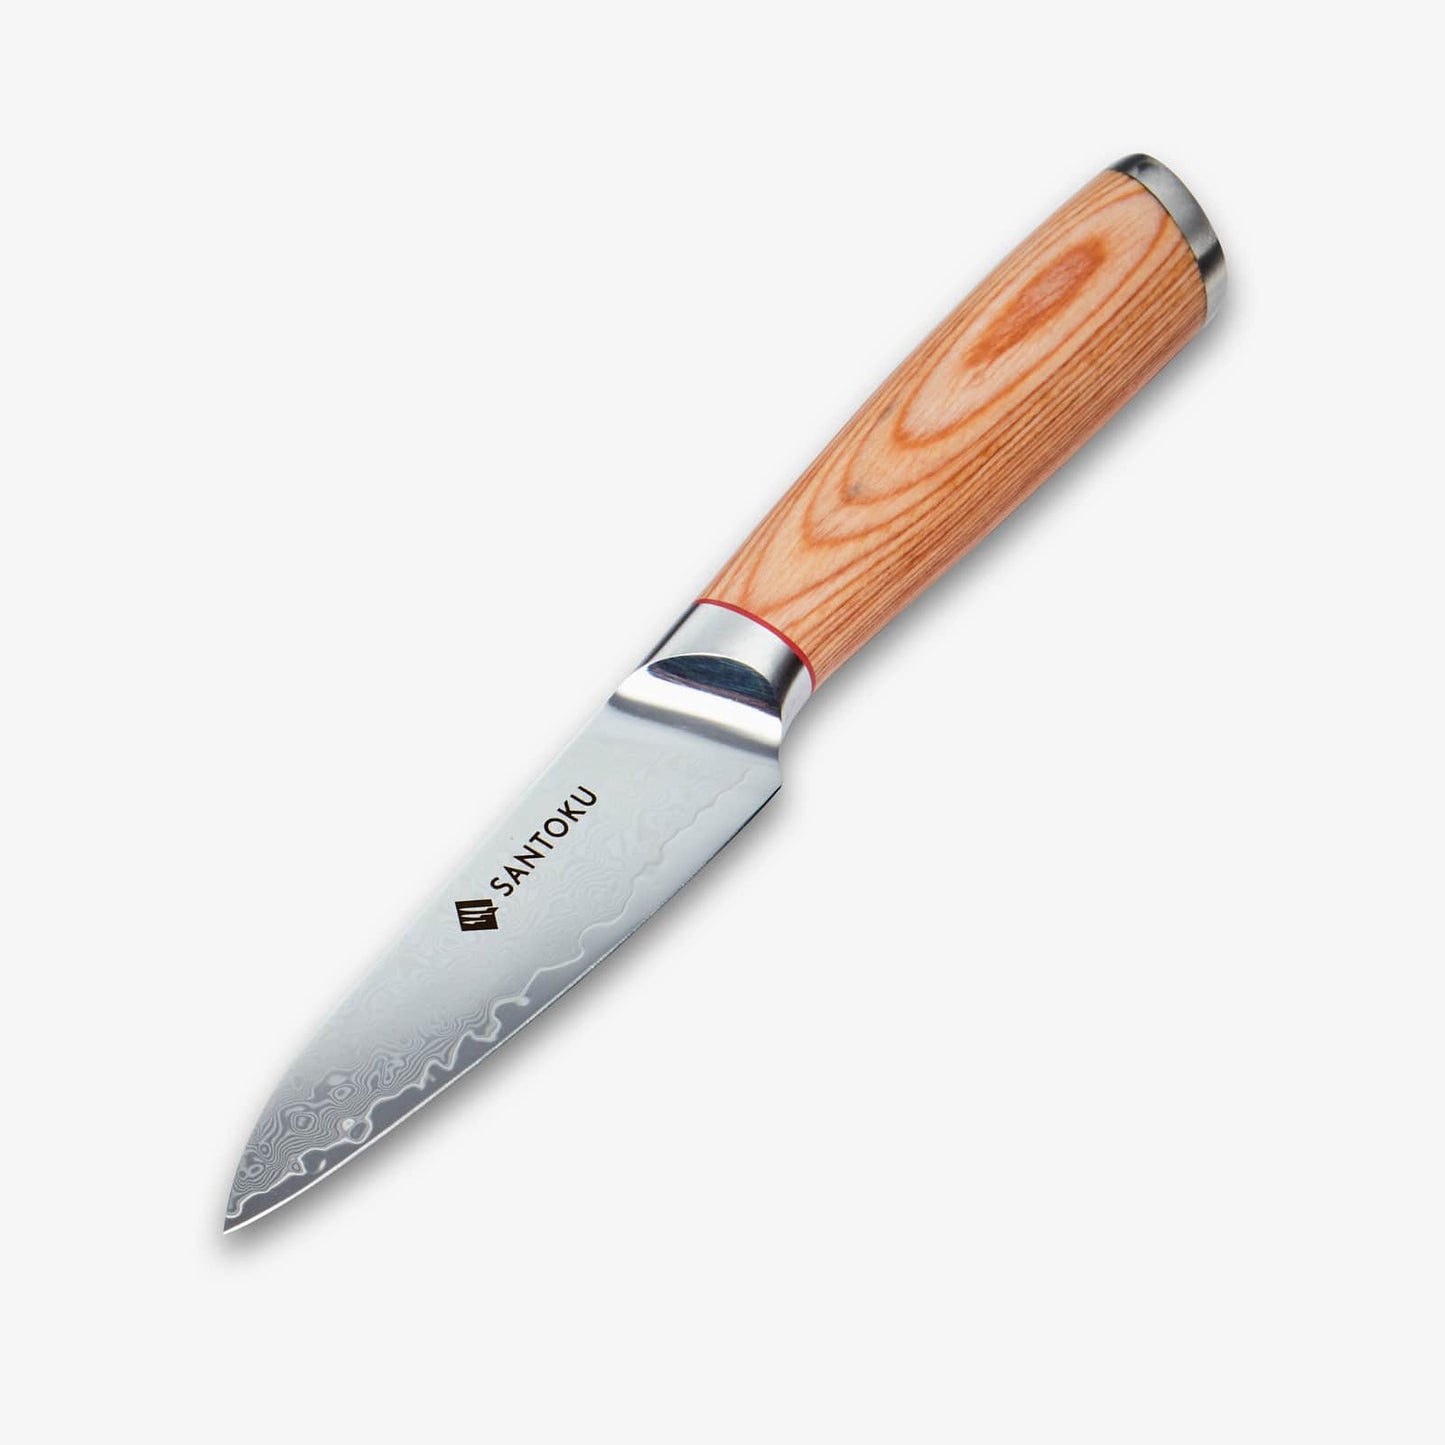 Haruta (はるた)  4 inch Paring Knife